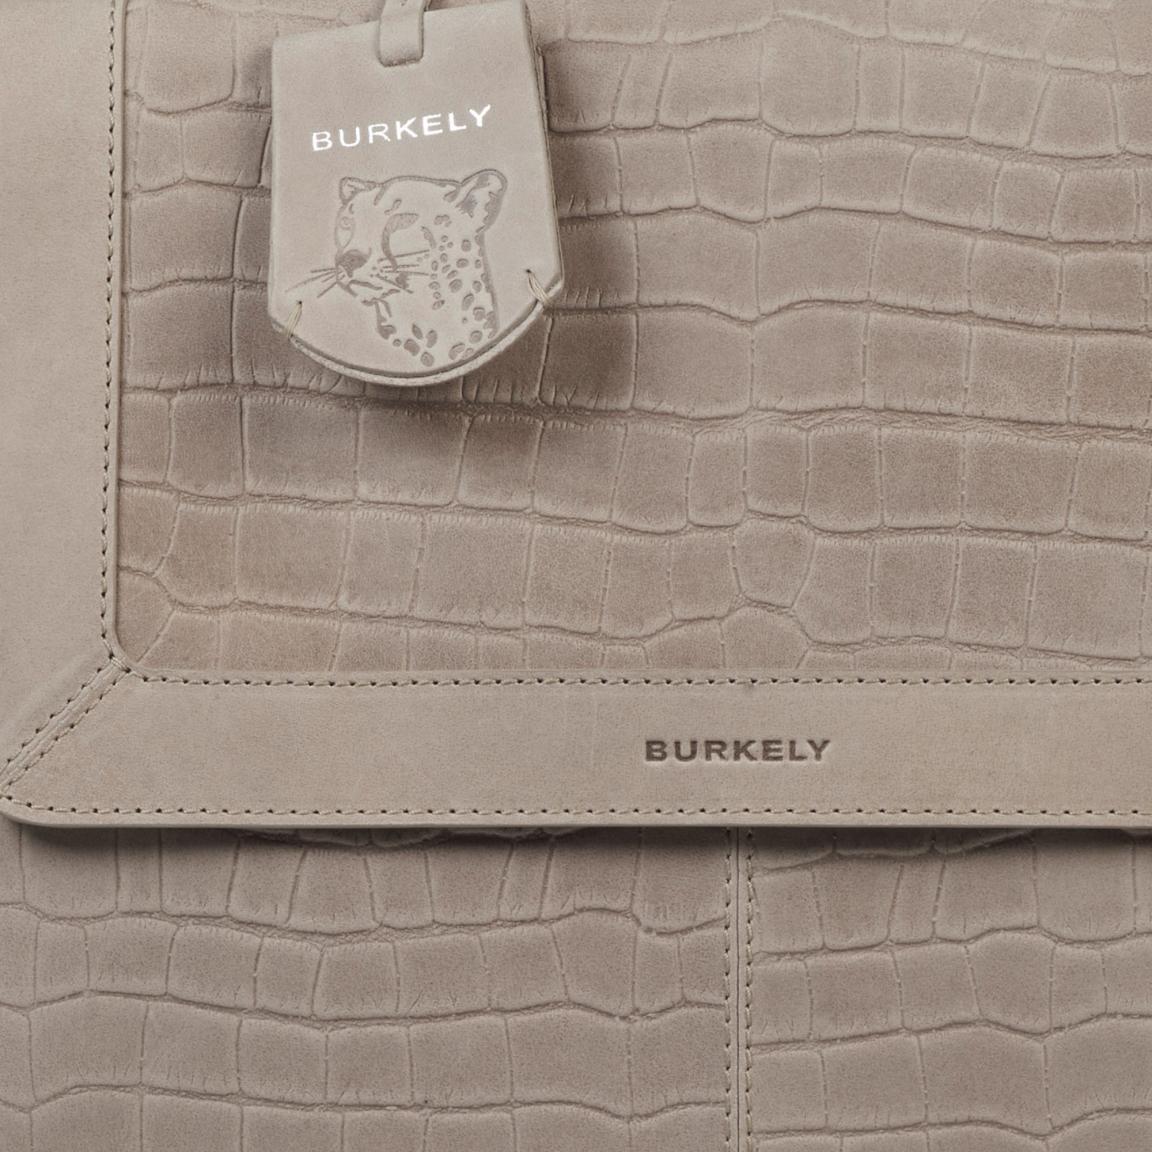 Burkely Handtasche Reptiloptik Icon Ivy Citybag grau